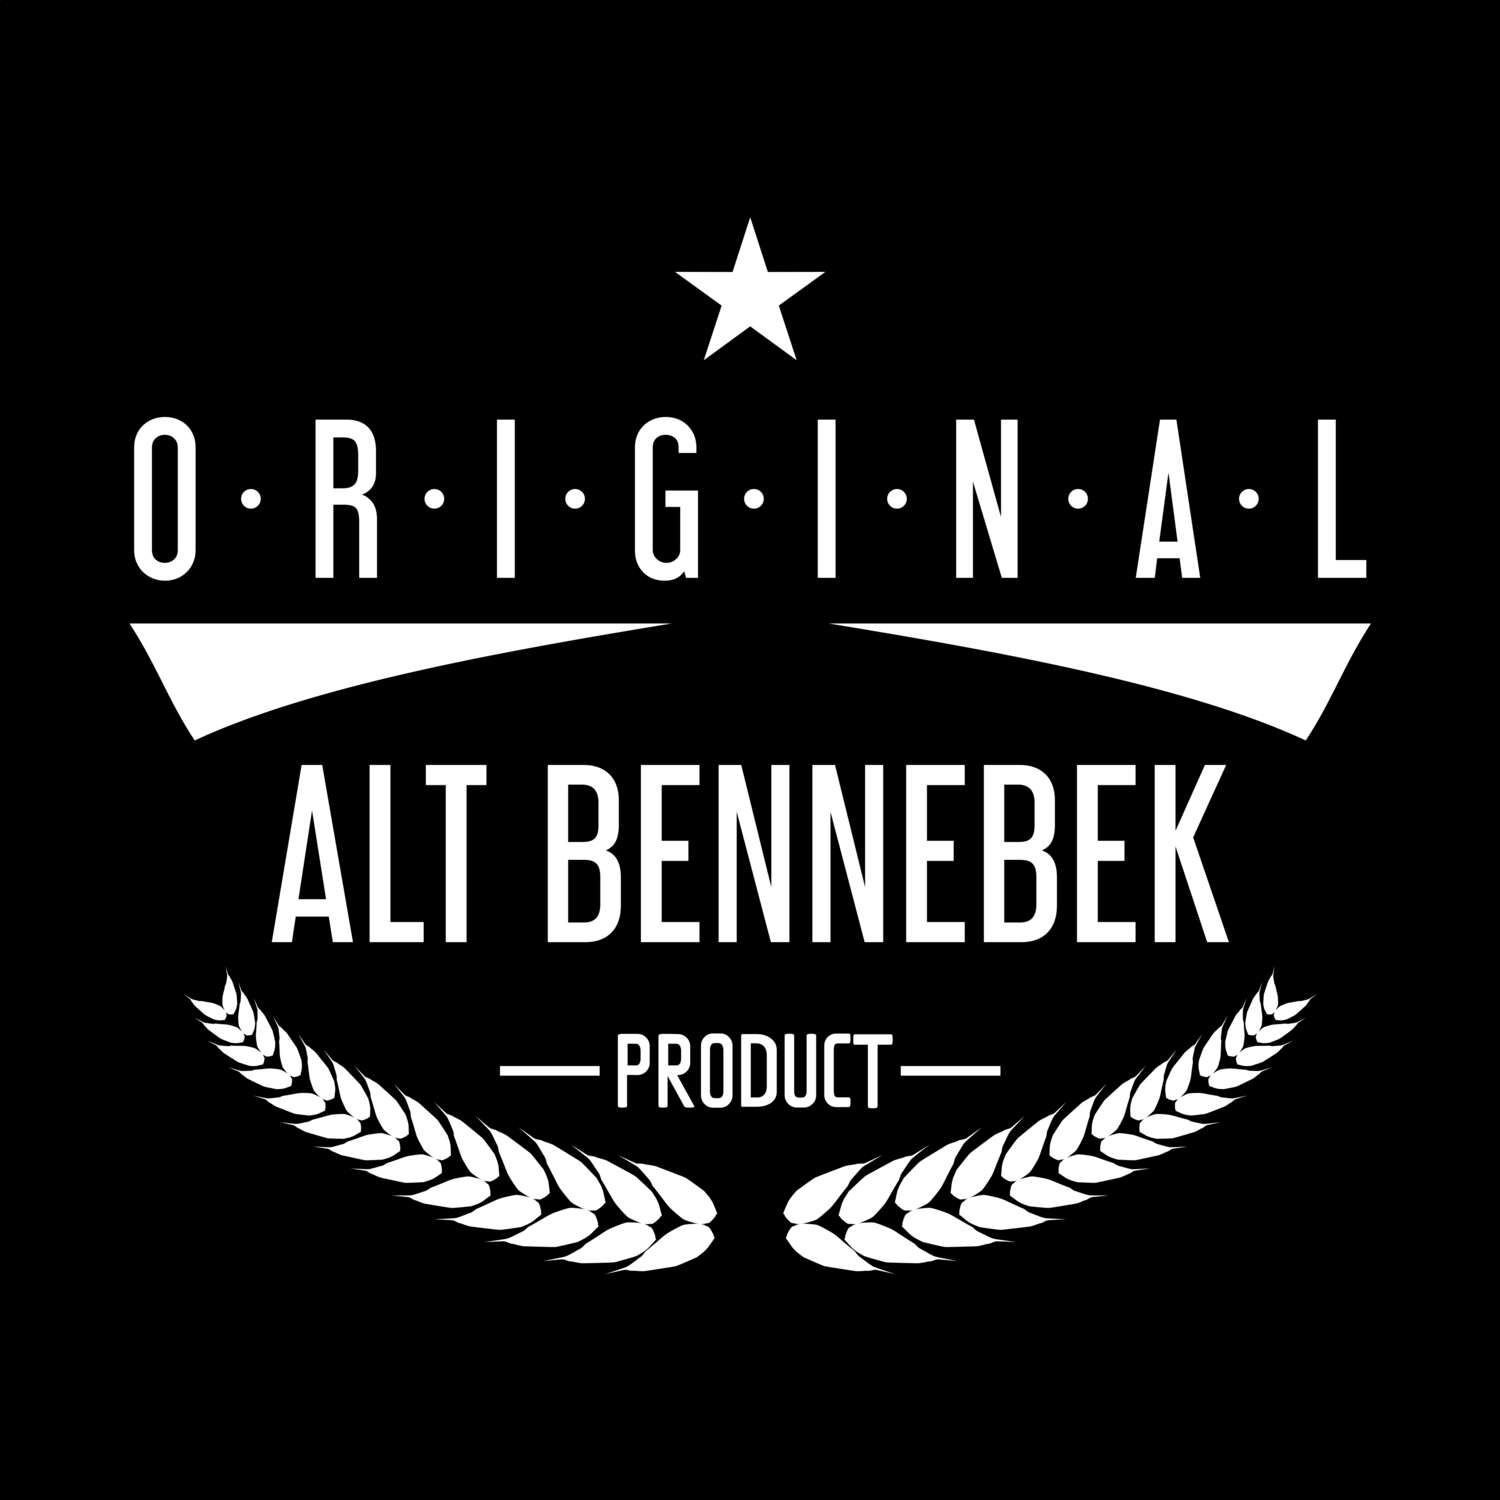 Alt Bennebek T-Shirt »Original Product«